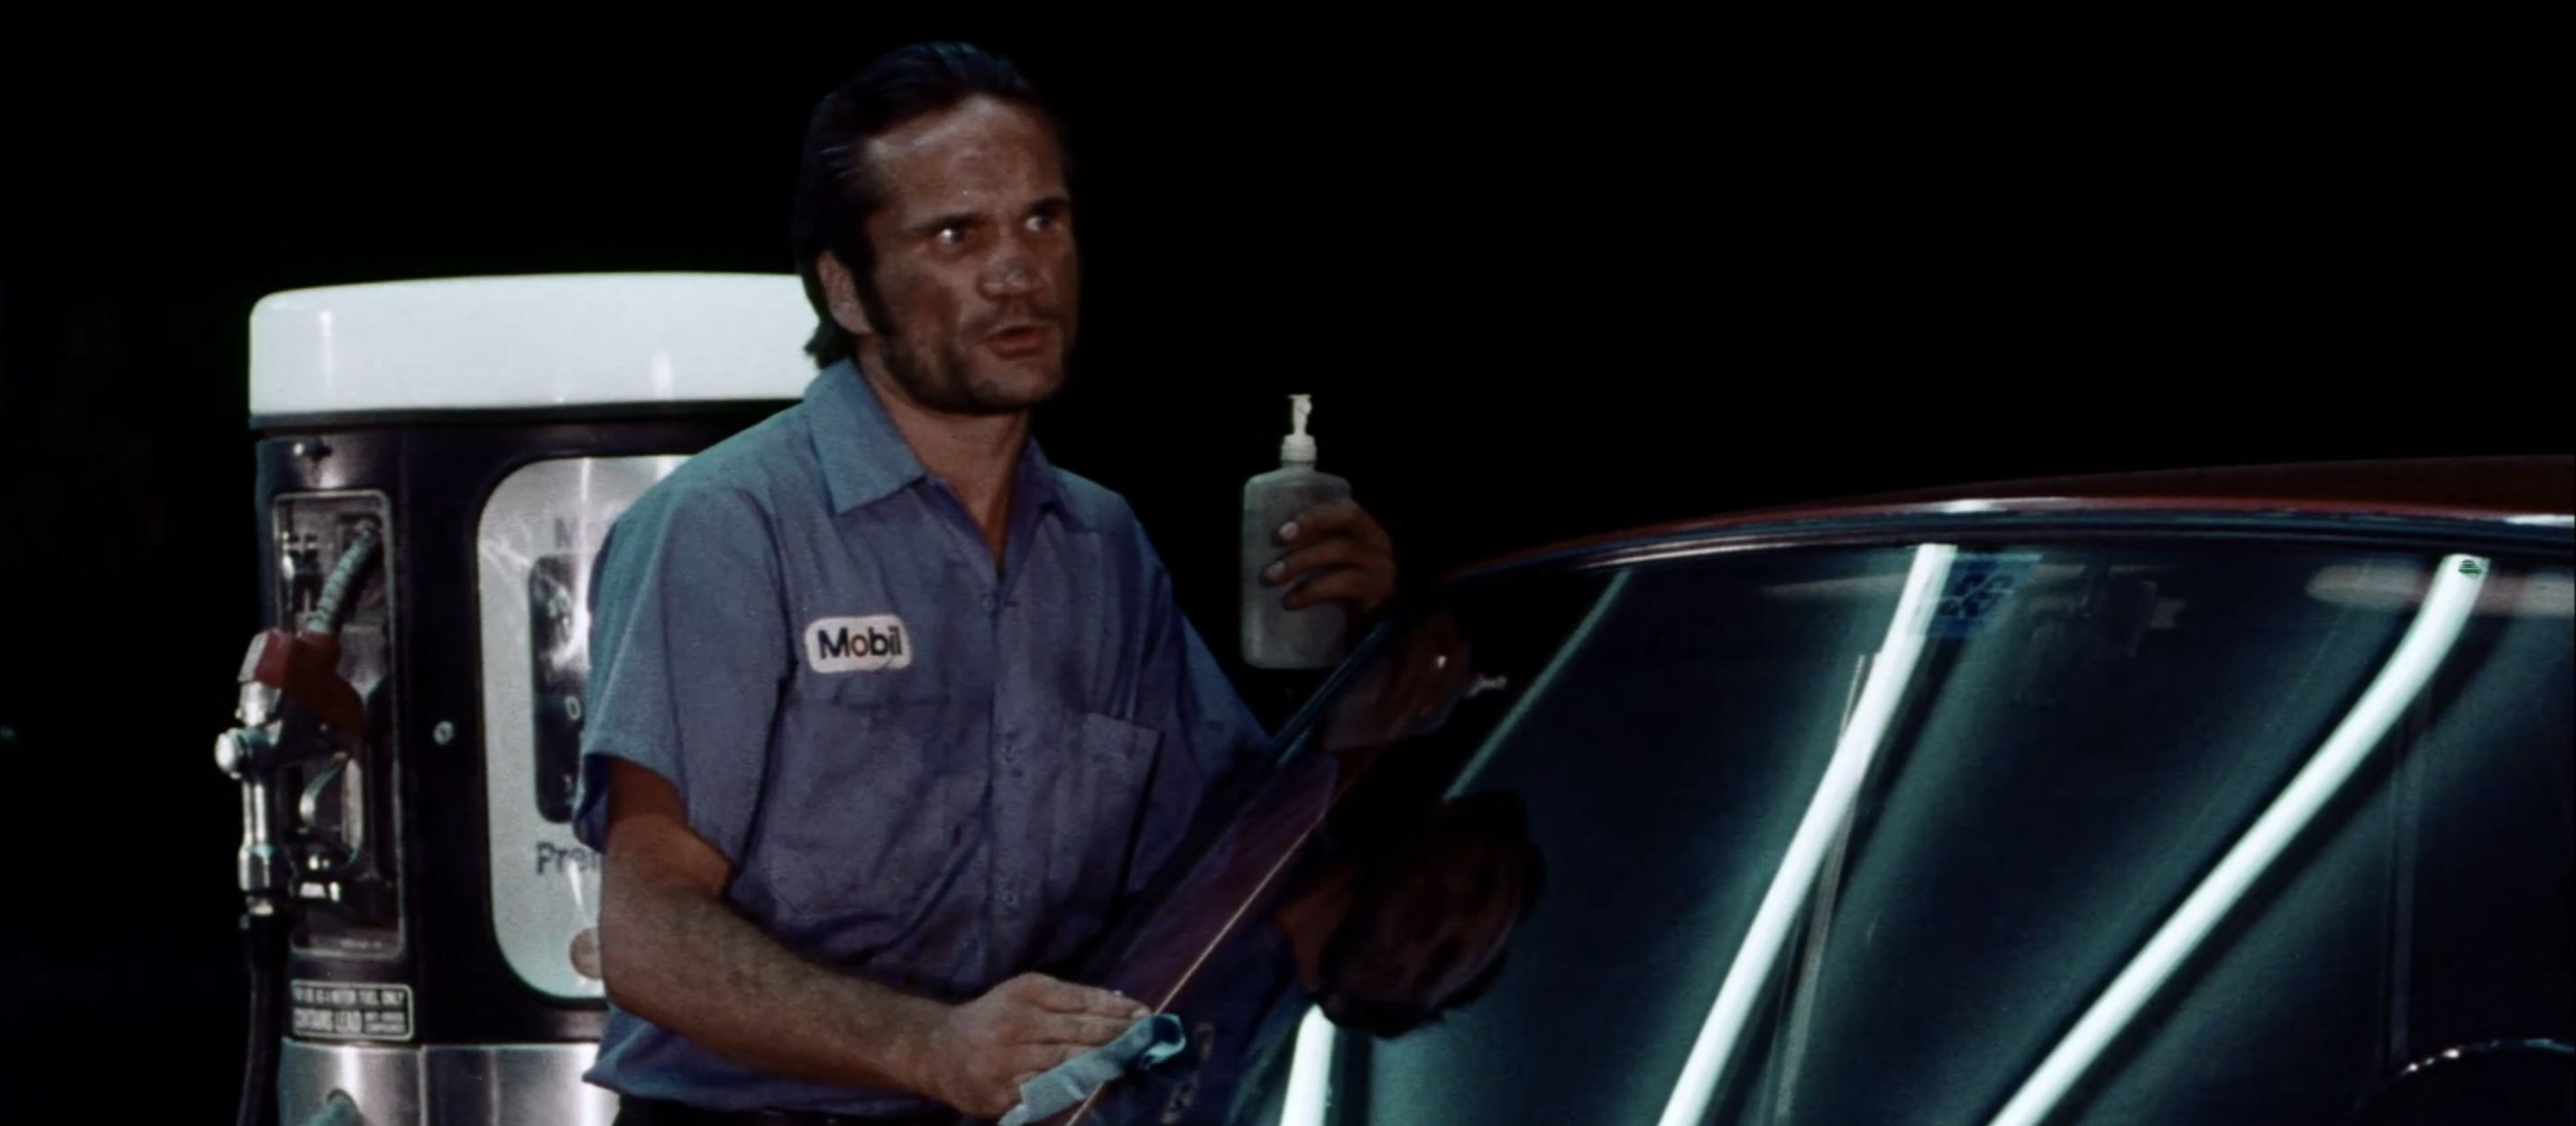 Charles Dierkop as Gas Attendant in Messiah of Evil 